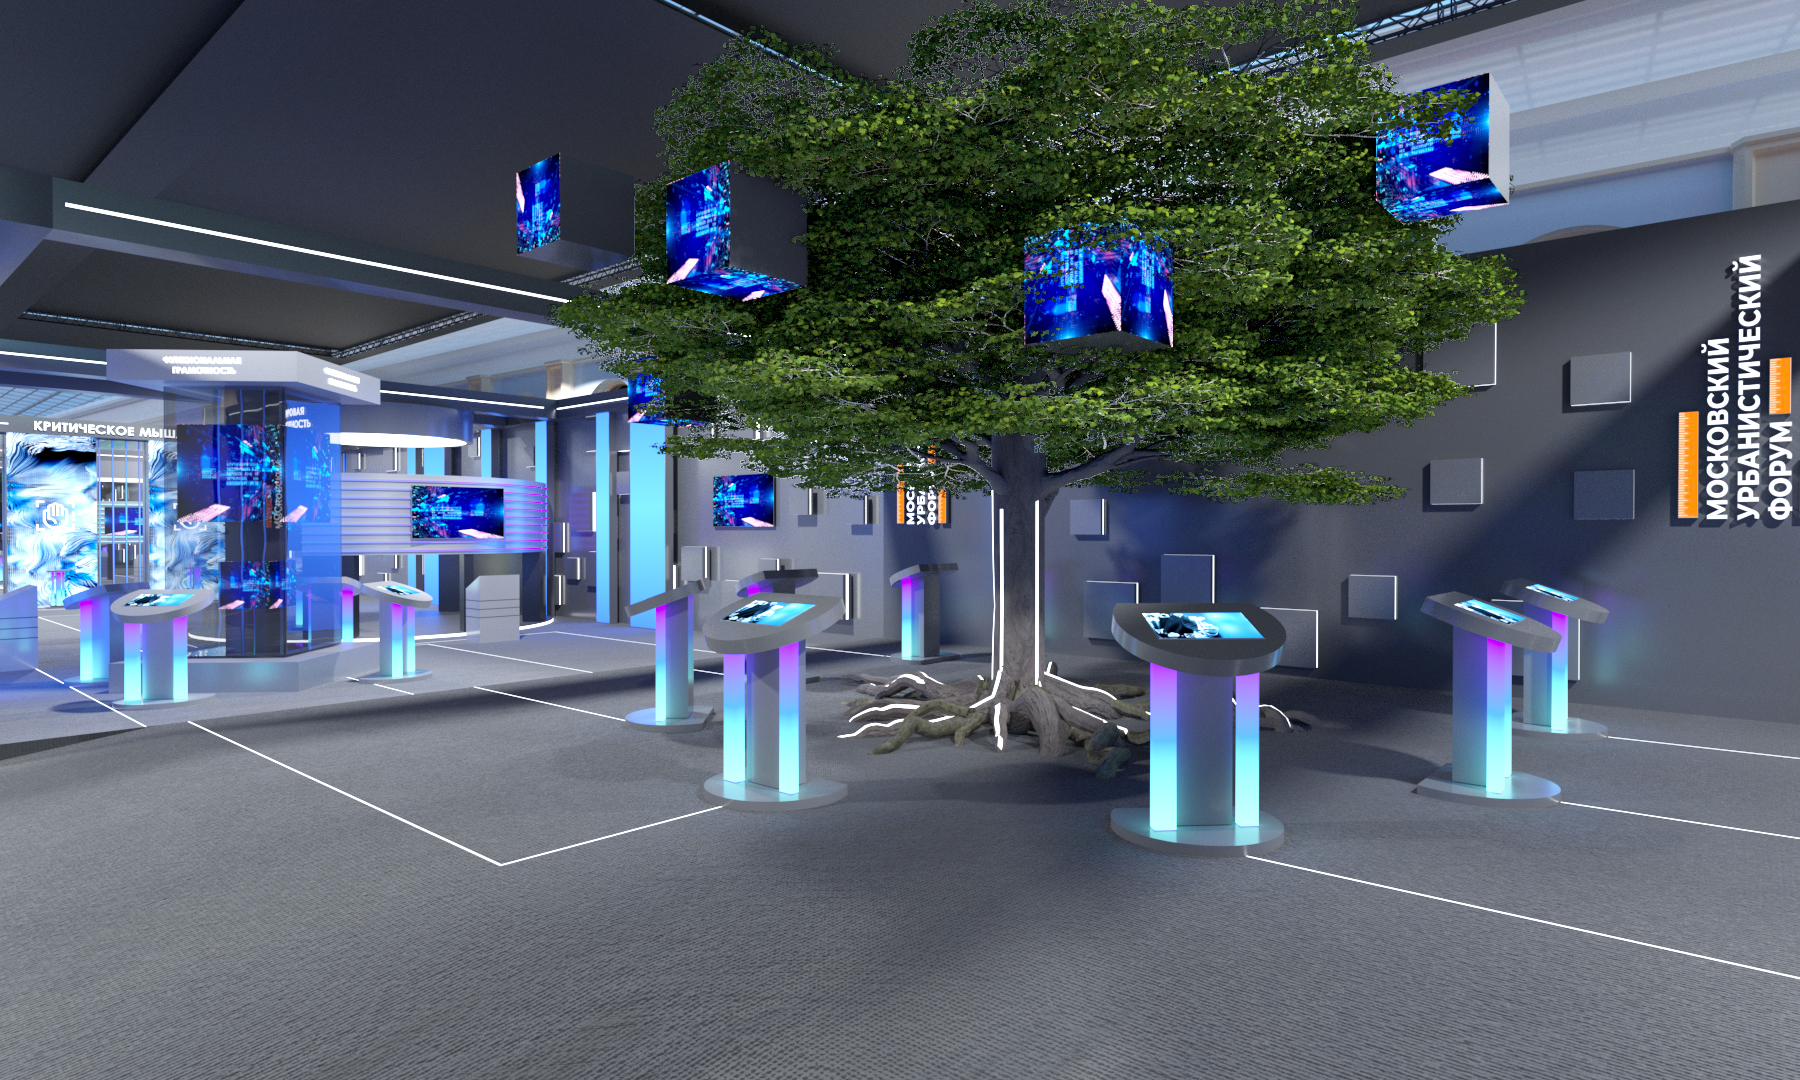 На площадке установят центральный экспонат: интерактивное дерево. Фото: пресс-служба Комплекса социального развития Правительства Москвы.